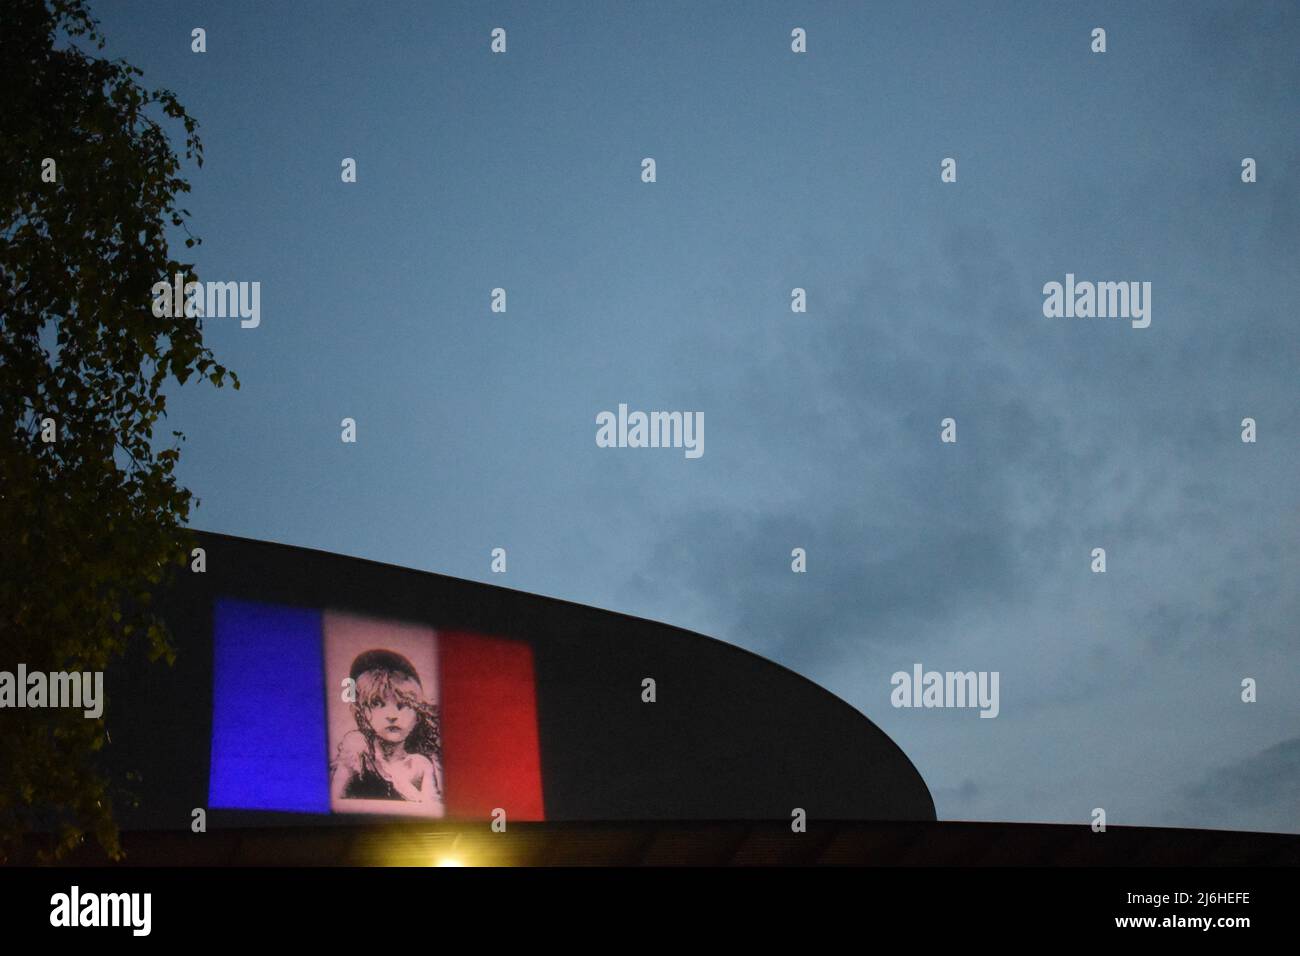 La bandera de Les Misérables se proyectaba en el lado del teatro Milton Keynes, con copyspace. Foto de stock